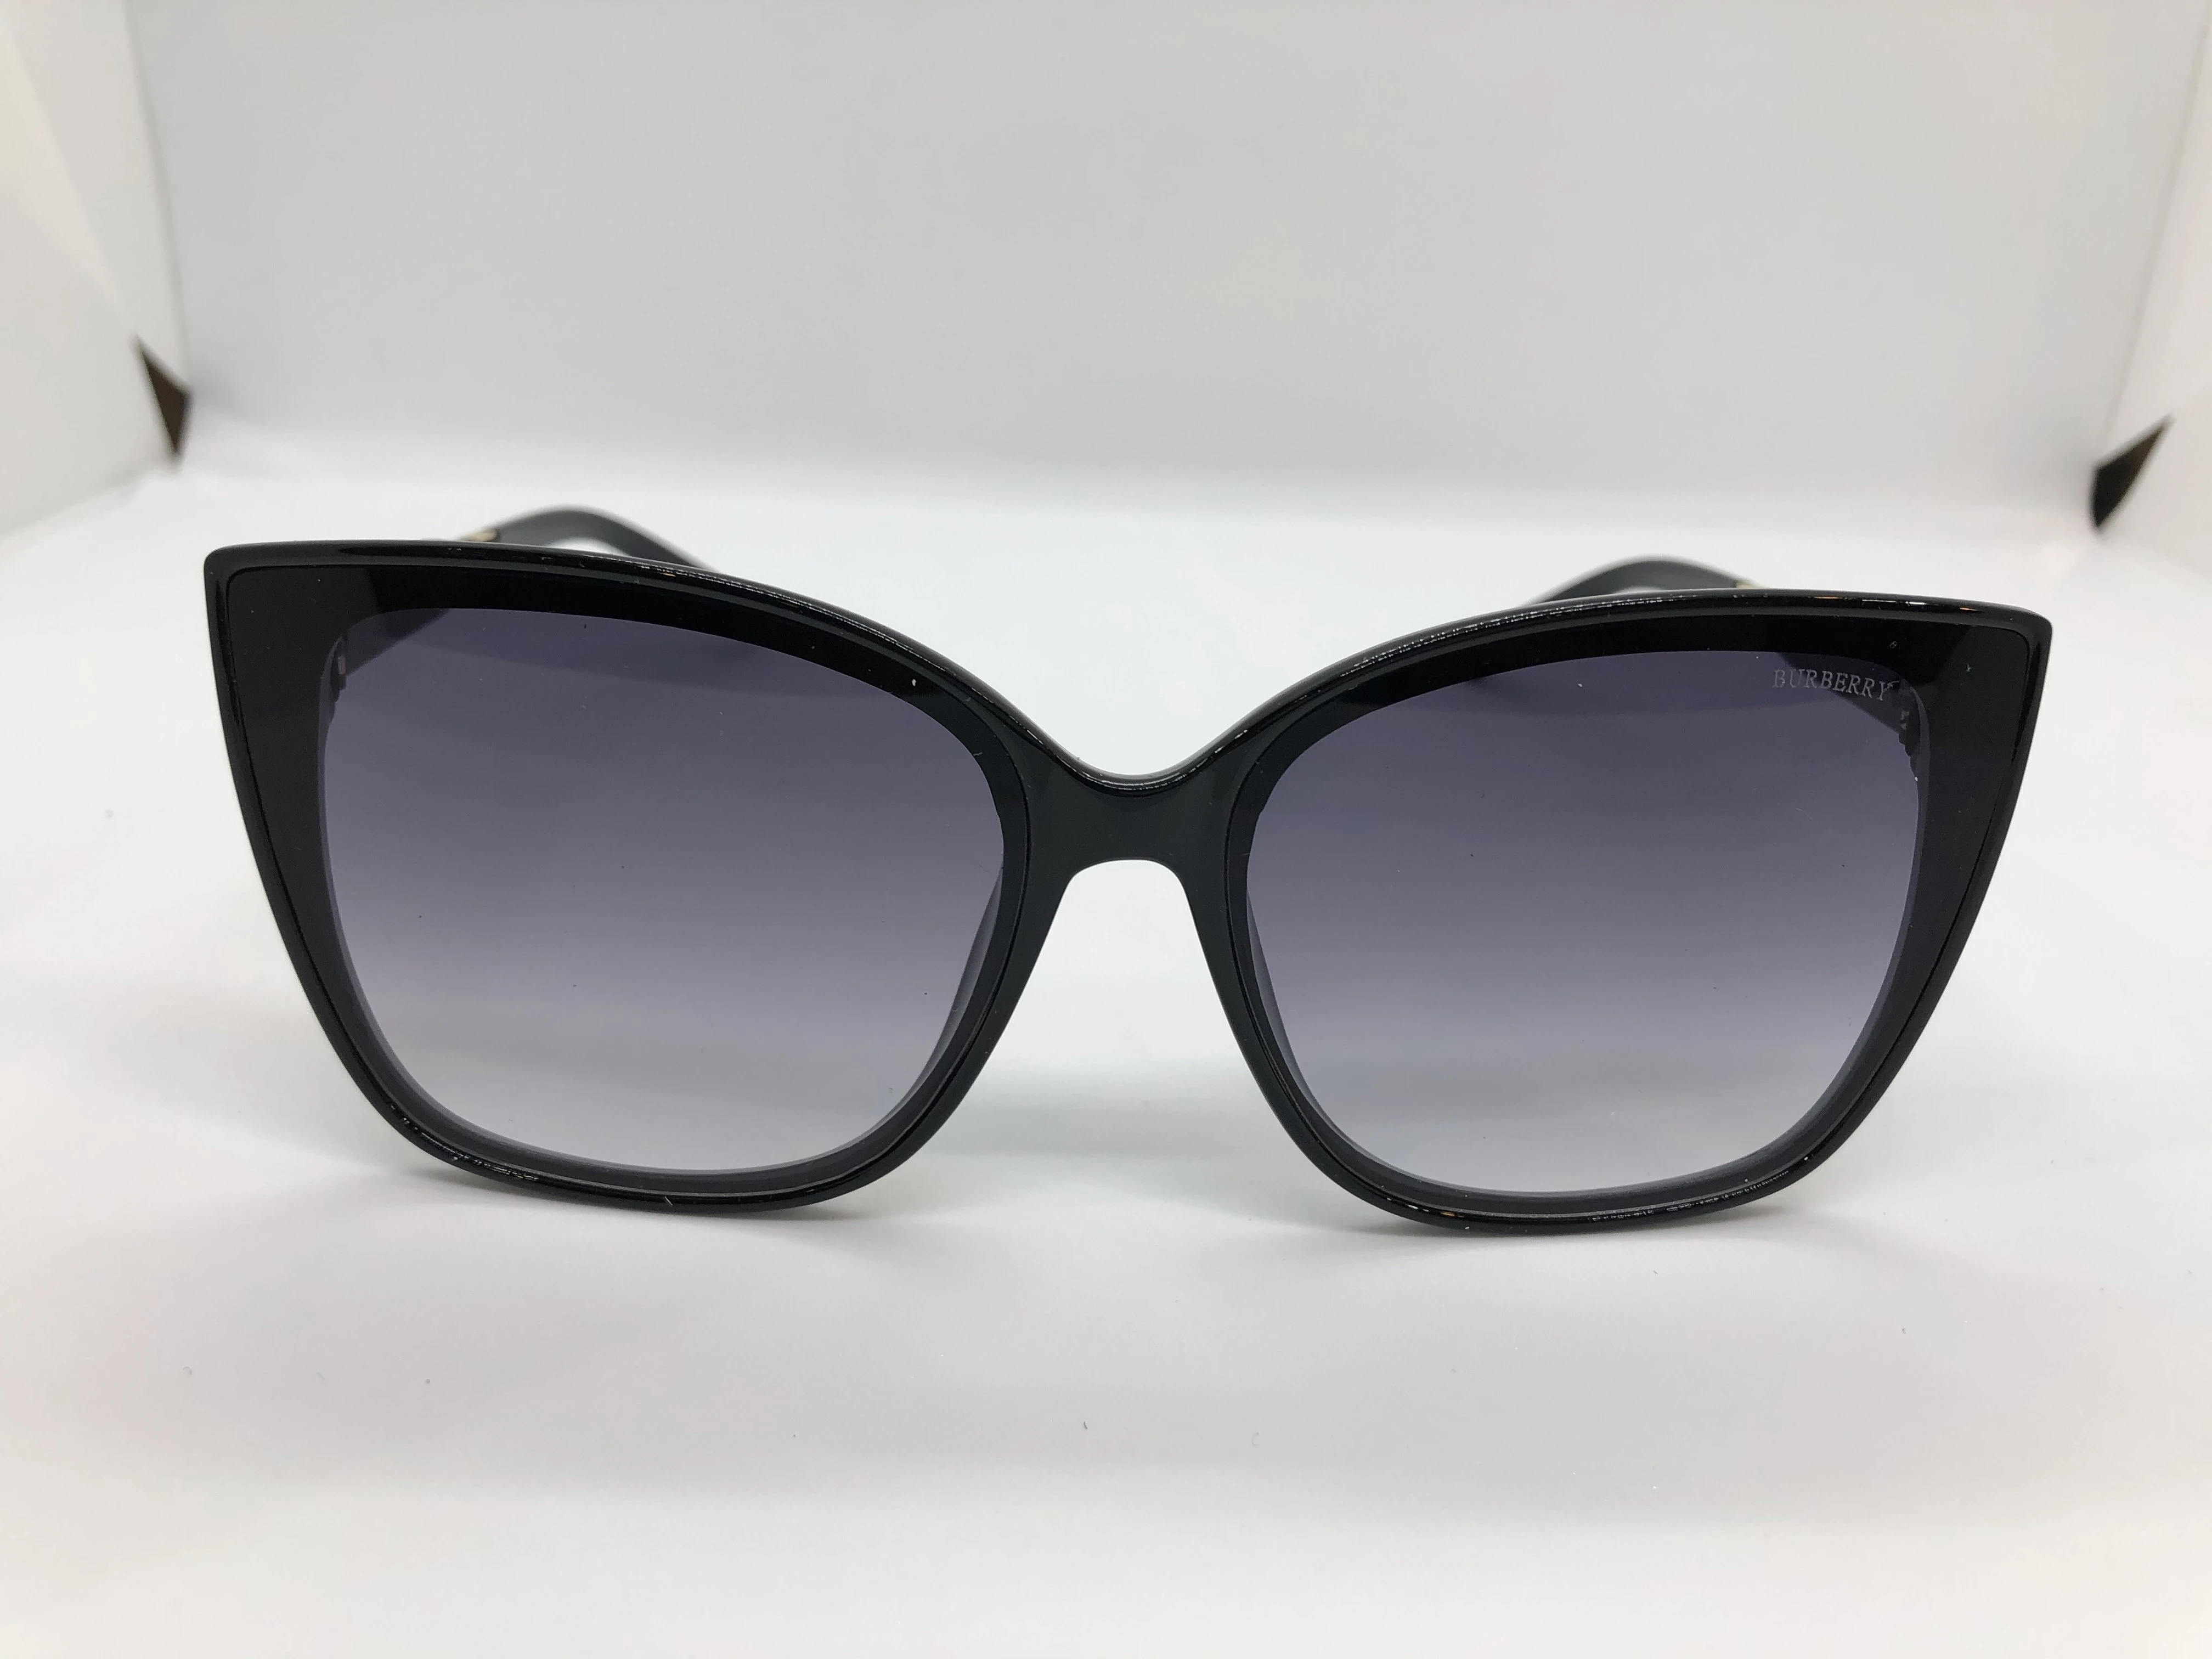 Burberry sunglasses - black polycarbonate frame - black gradient lenses - Burberry black polycarbonate arm - for women